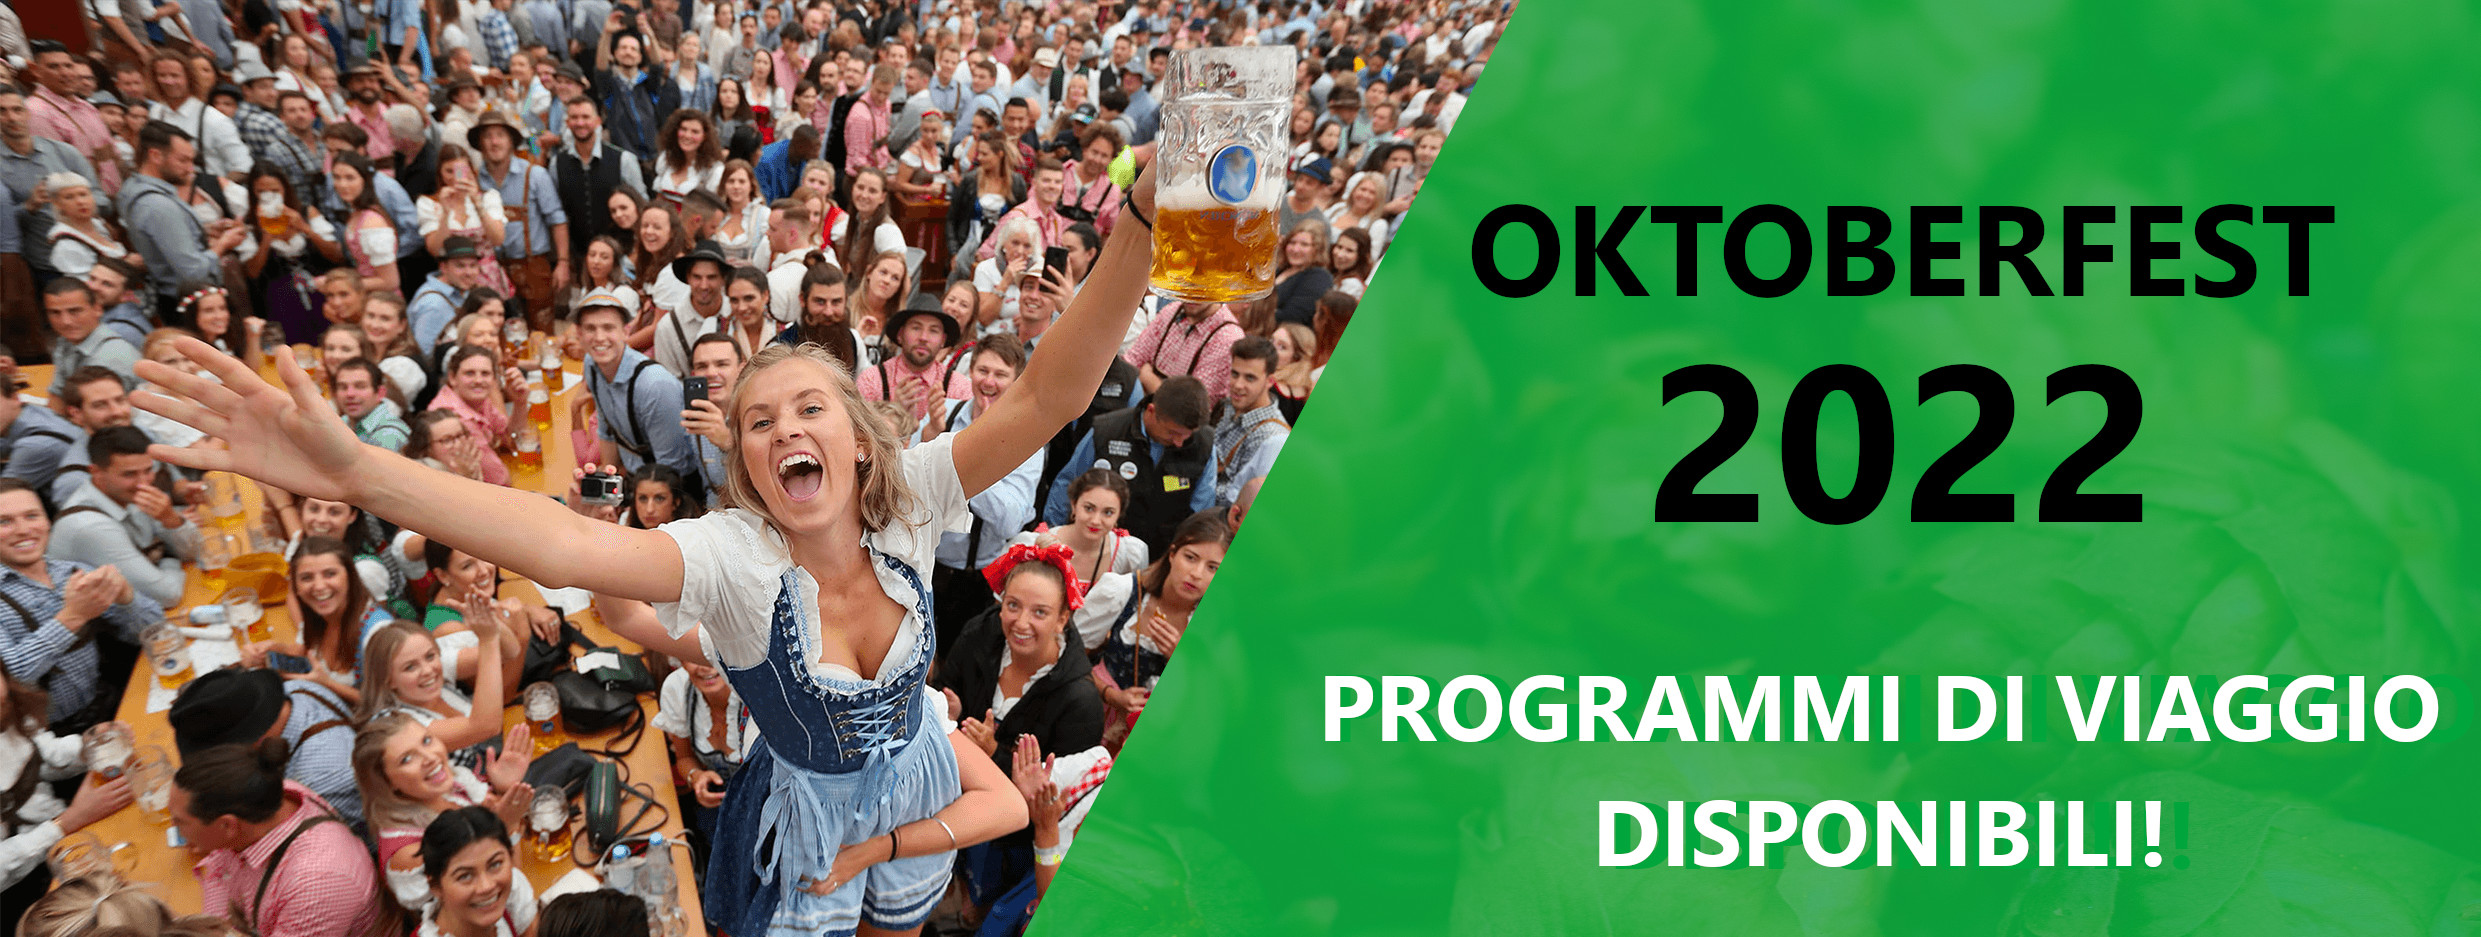 Birraioli - Oktoberfest 2022 - Programmi di viaggio disponibili